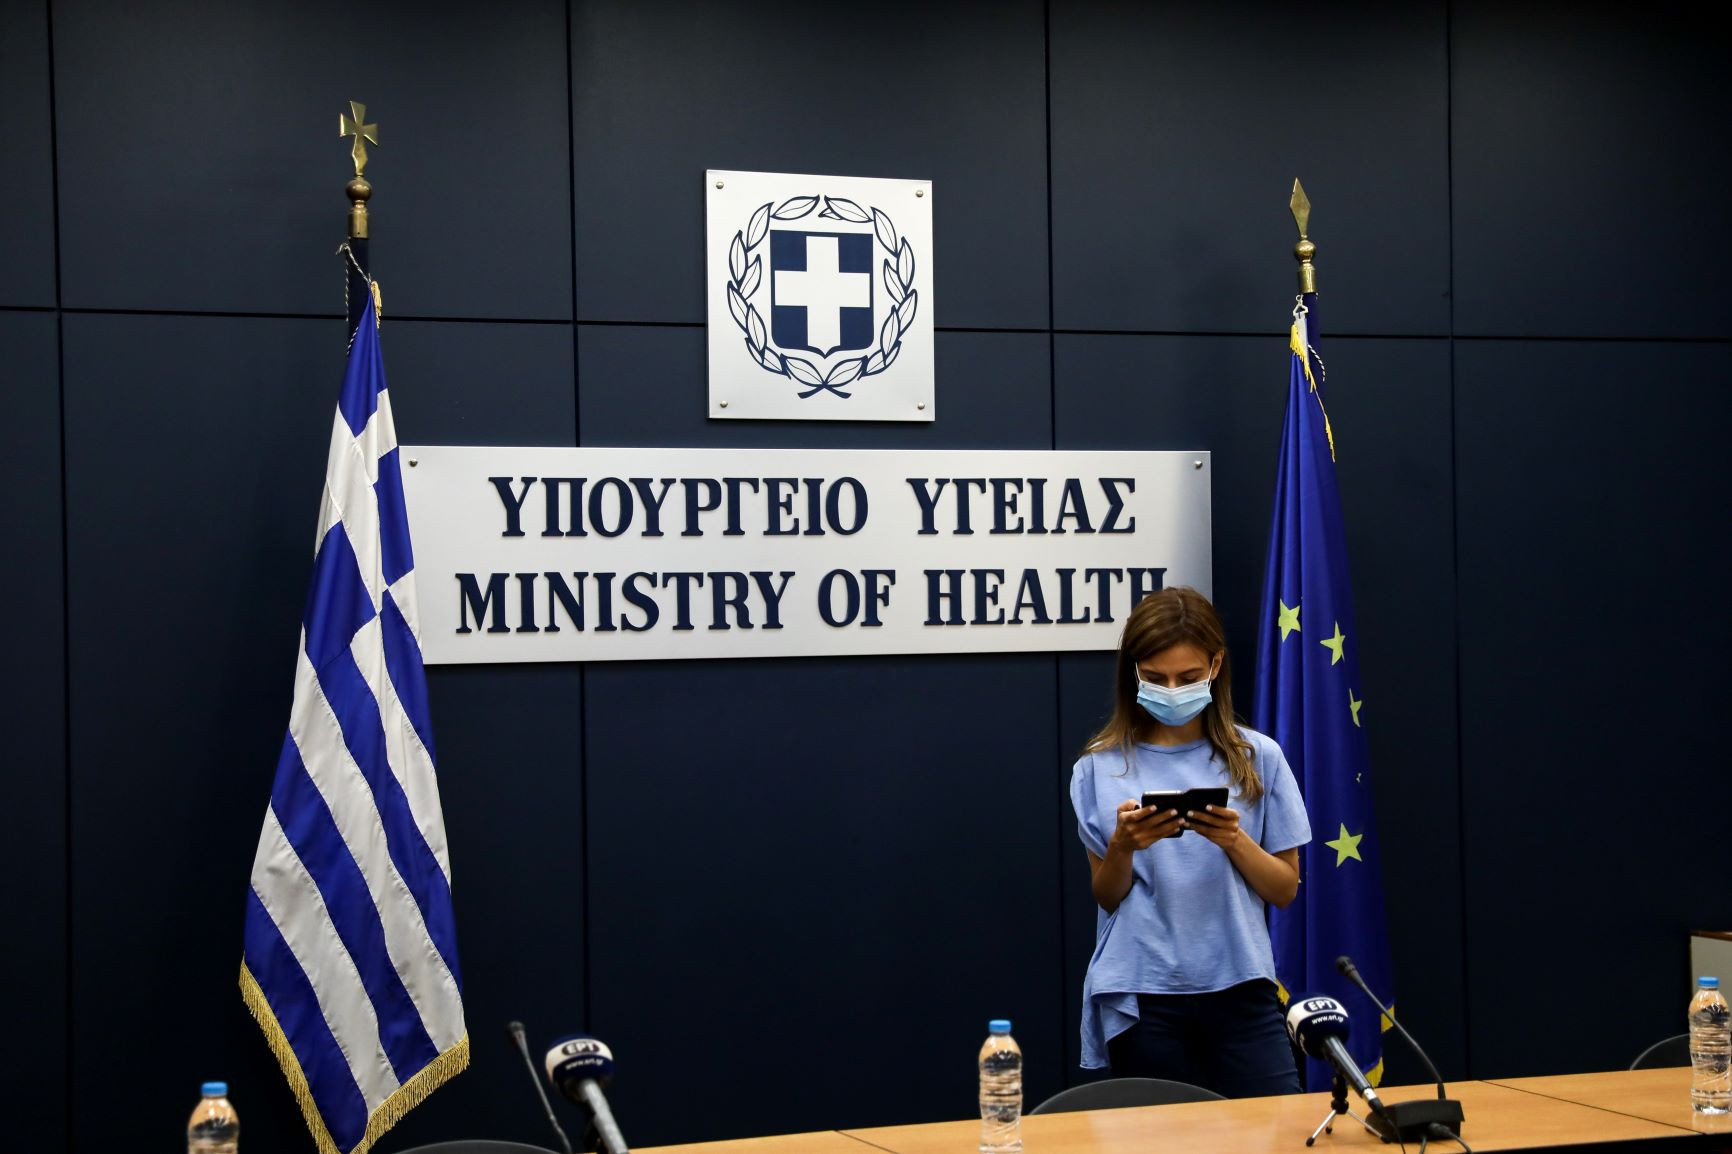 Παράλληλη «Επιτροπή Υγείας» για την έγκριση πολιτικών αποφάσεων της κυβέρνησης